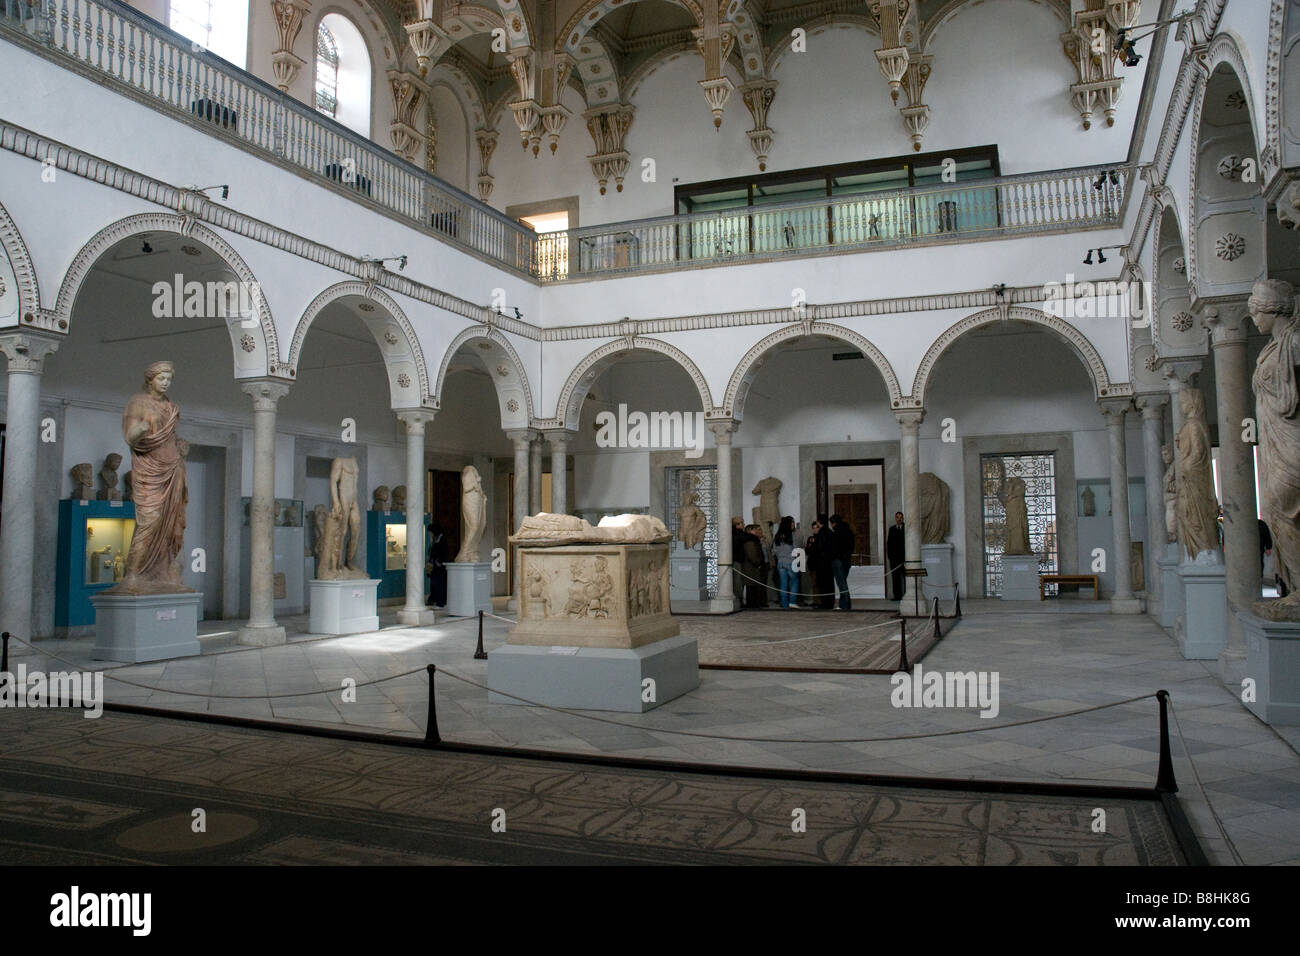 Eine beeindruckende Halle in Tunesiens Bardo-Museum, einmal ein Palast jetzt bekannt vor allem für seine immense Sammlung römischer Mosaike Stockfoto